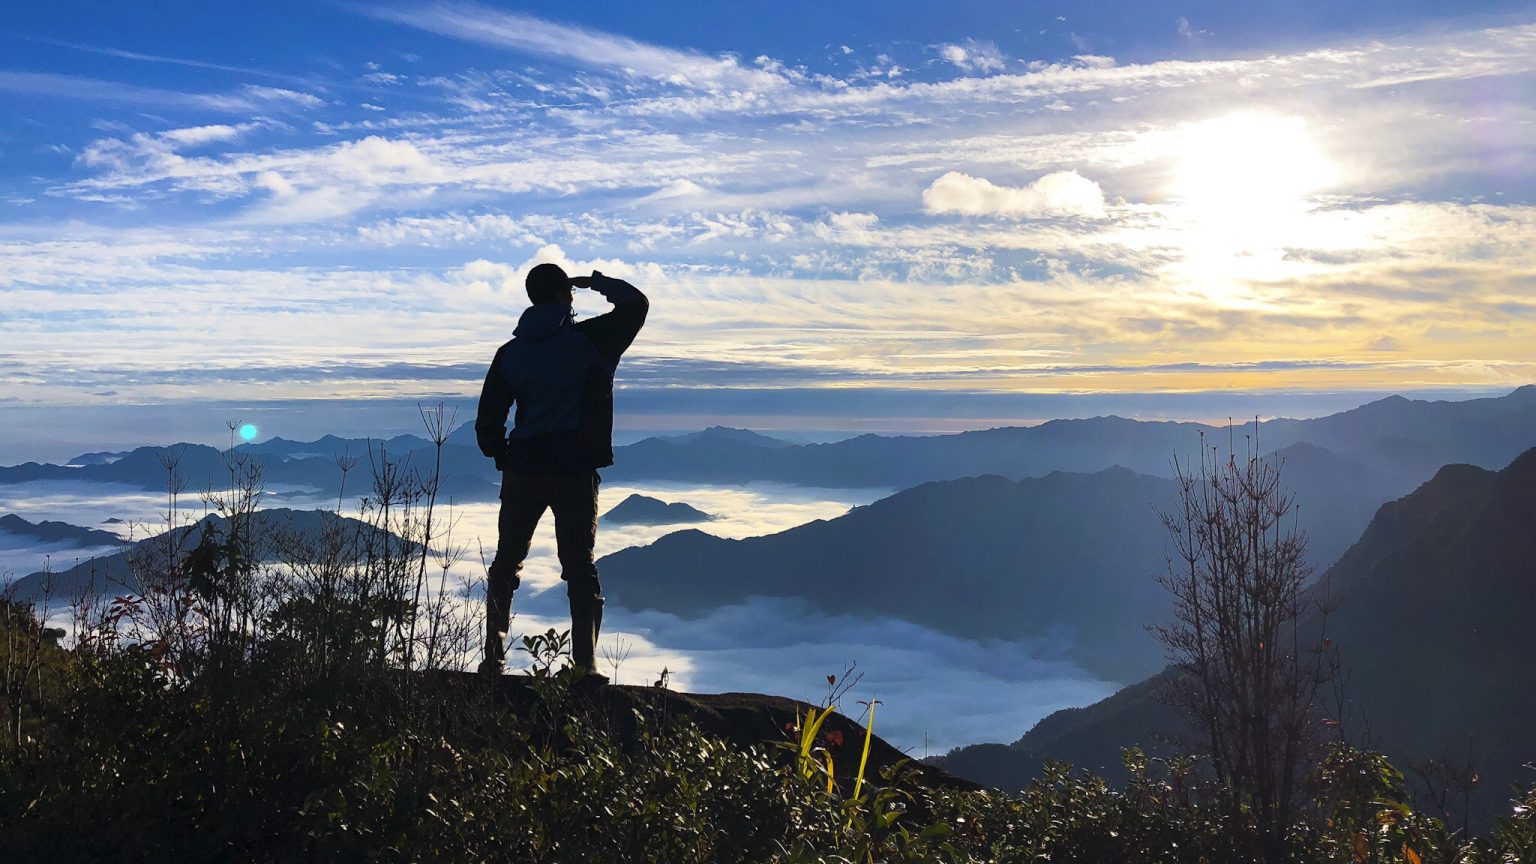 Lao Than Peak Mountain Hiking Tour - 2 Days 2